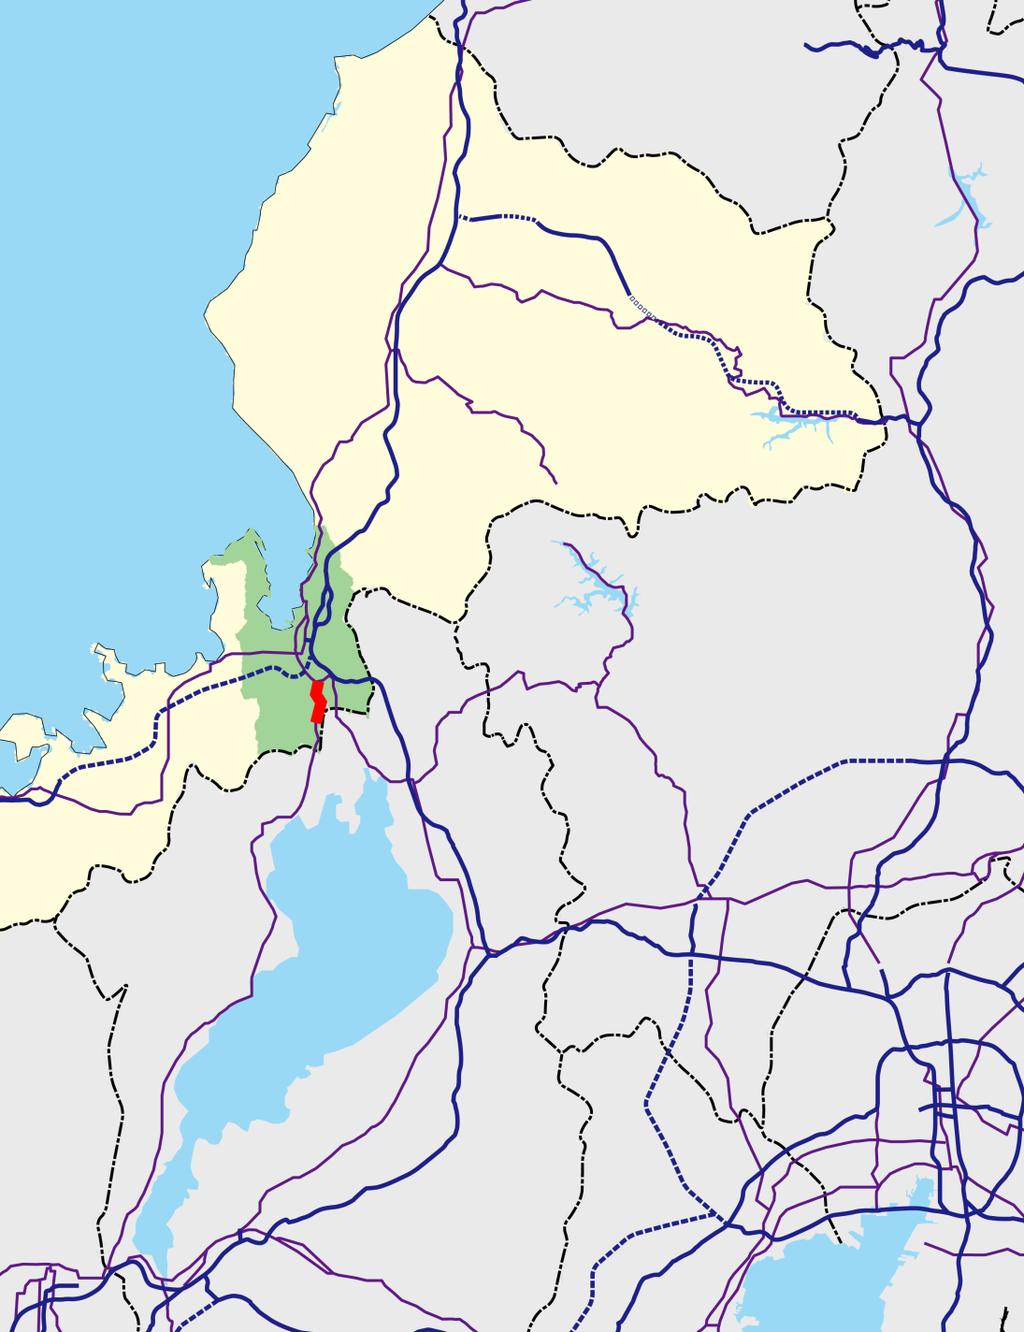 事業全体図 N 至金沢石川県福井県 一般国道 161 号は 福井県敦賀市を起点とし 滋賀県湖西地域を経て